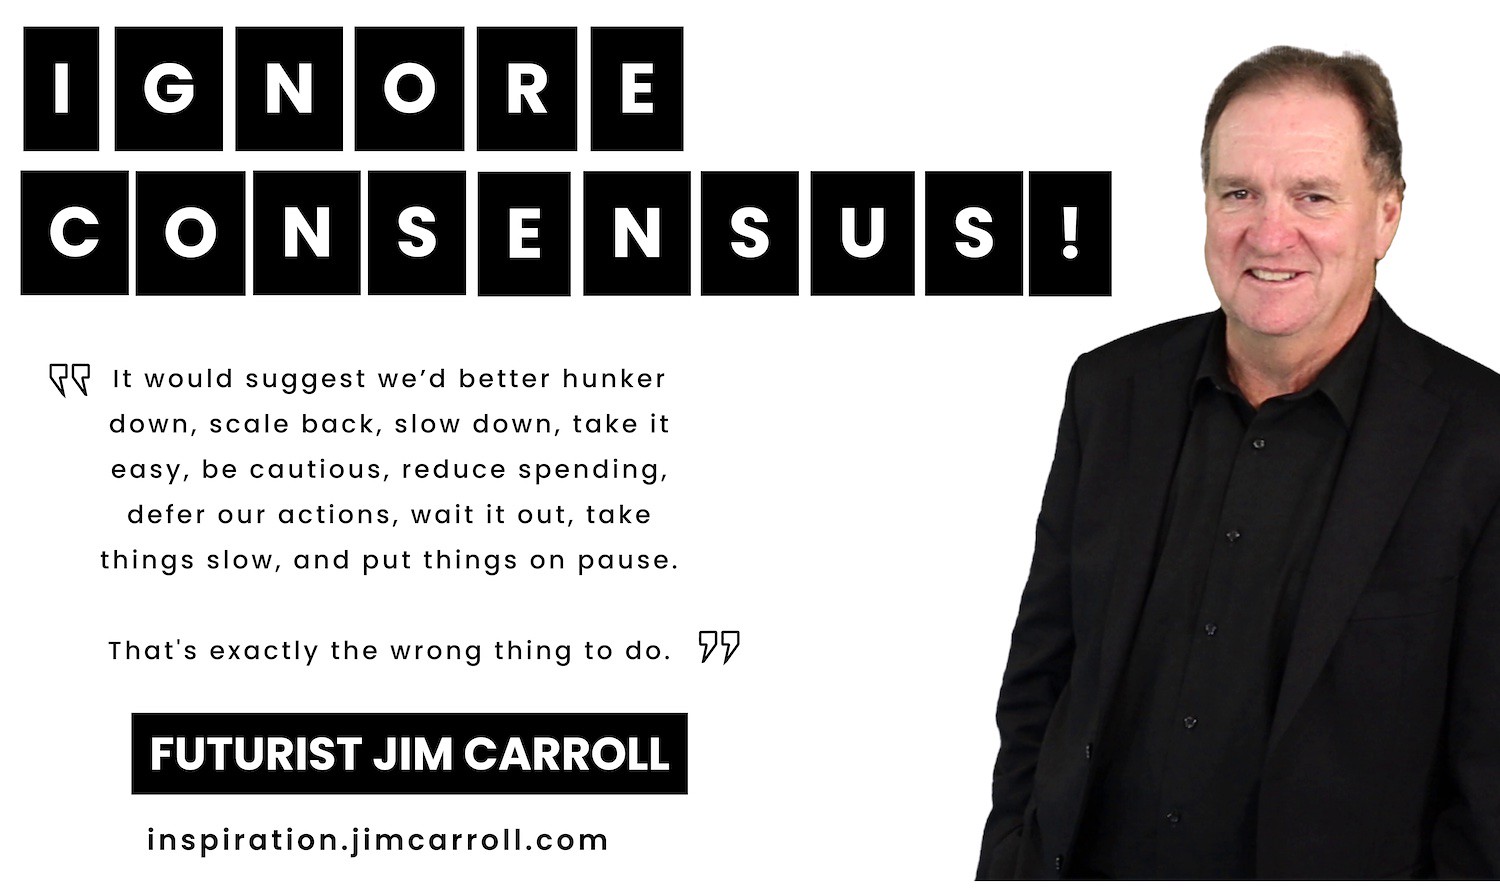 "Ignore consensus!" - Futurist Jim Carroll